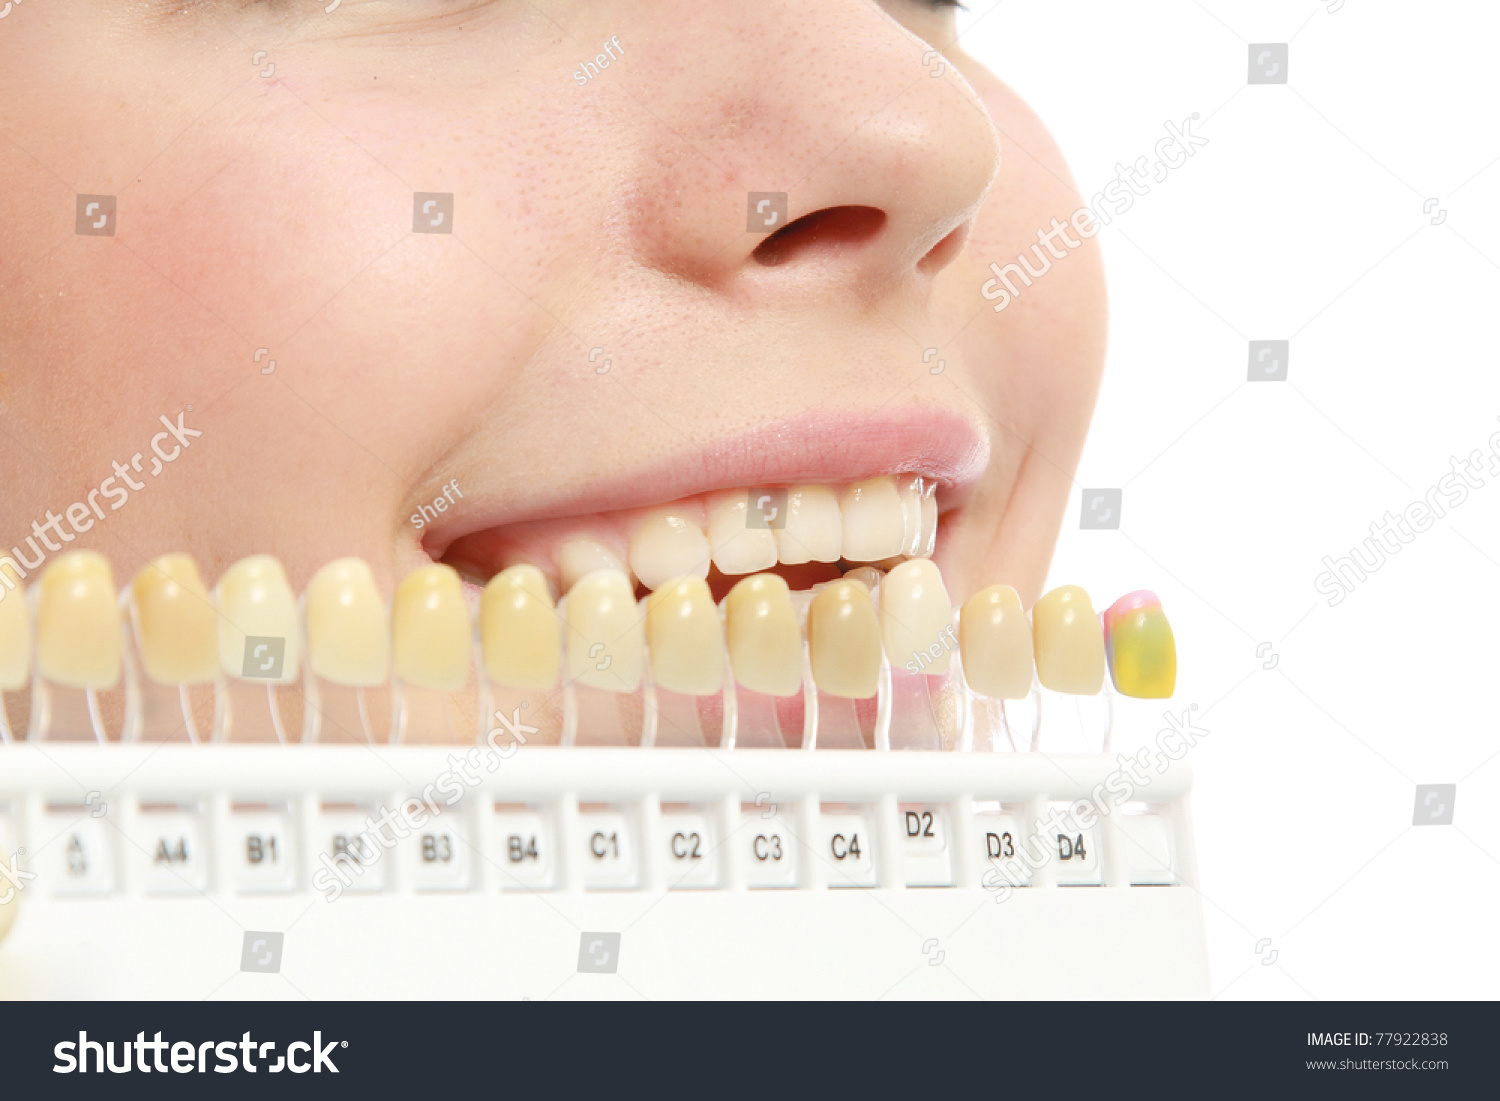 b1 цвет зубов фото